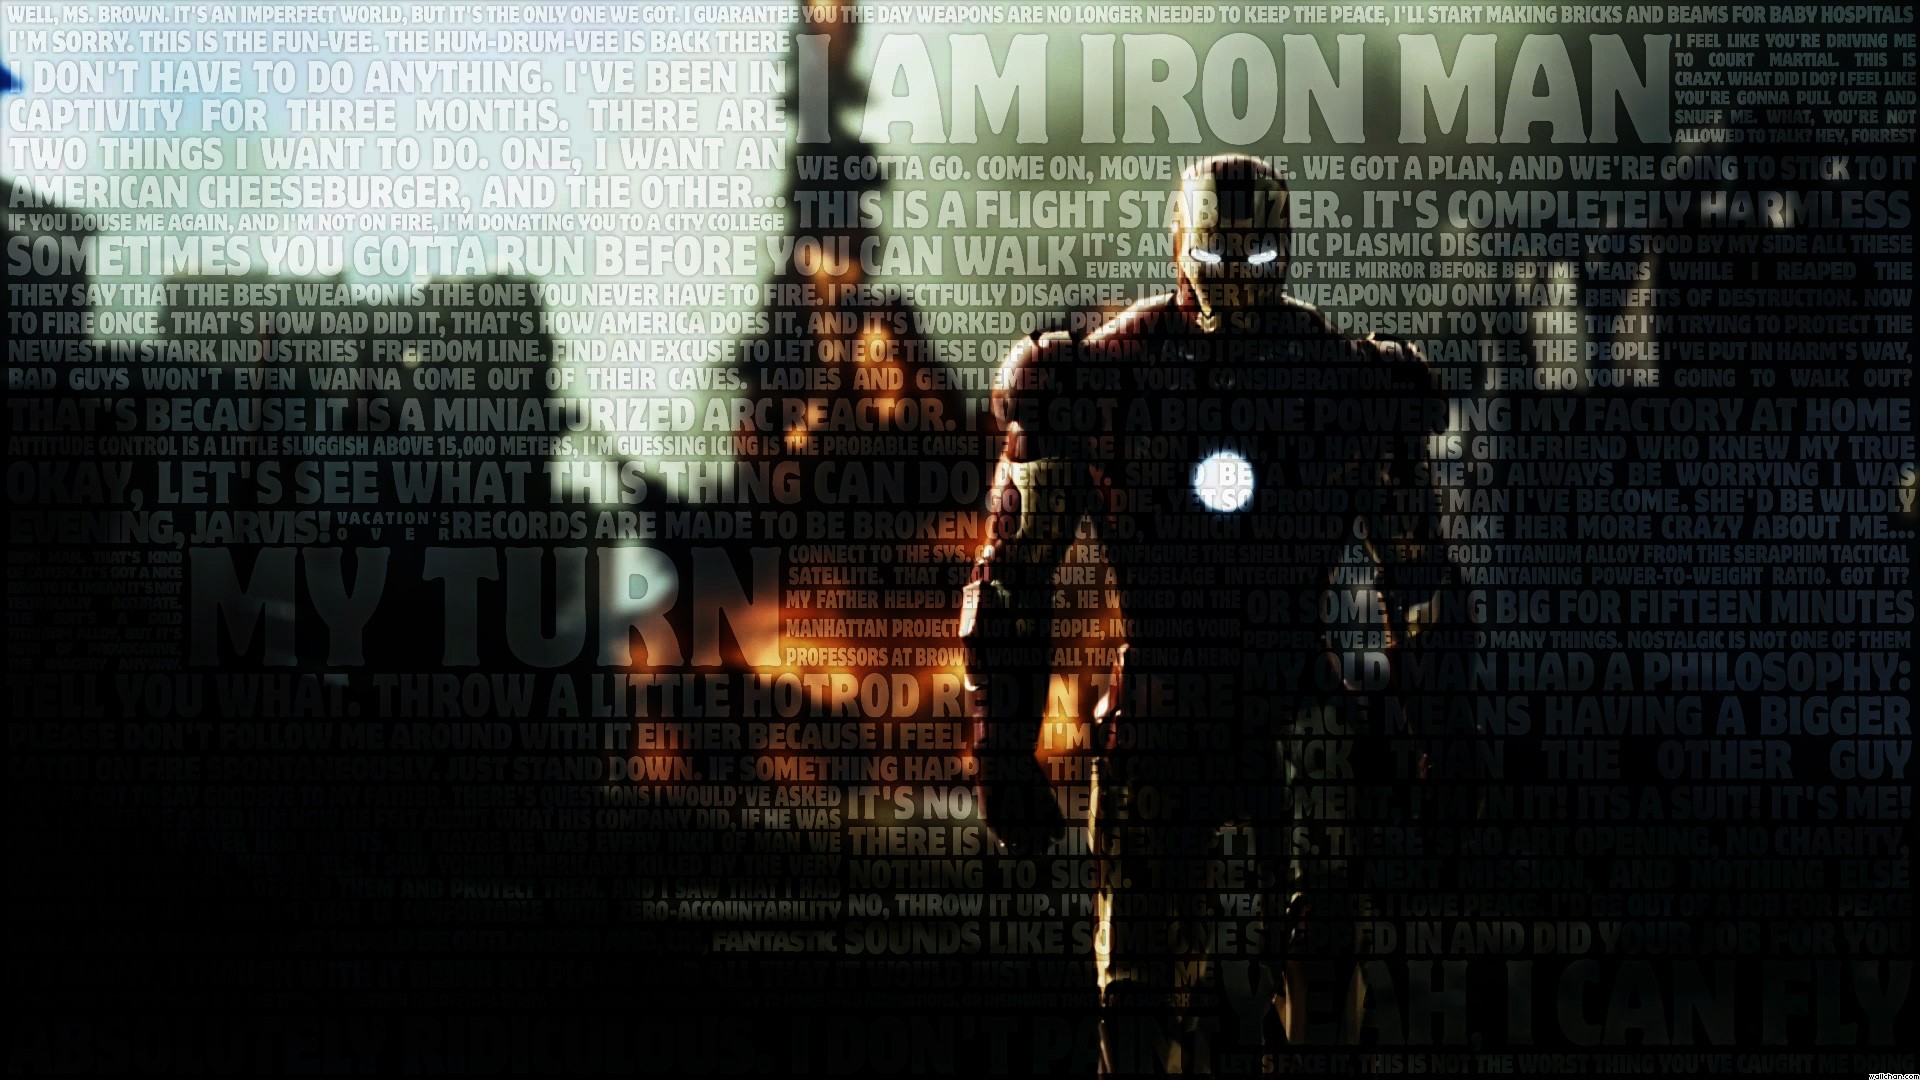 Tận hưởng chất lượng hình ảnh tuyệt đỉnh với Iron Man HD, sự kết hợp hoàn hảo giữa sự mạnh mẽ của Iron Man và sự chân thật của thế giới xung quanh. Làm ngỡ ngàng bạn bè bằng những bức ảnh sắc nét và sống động nhất, chỉ có trong Iron Man HD.